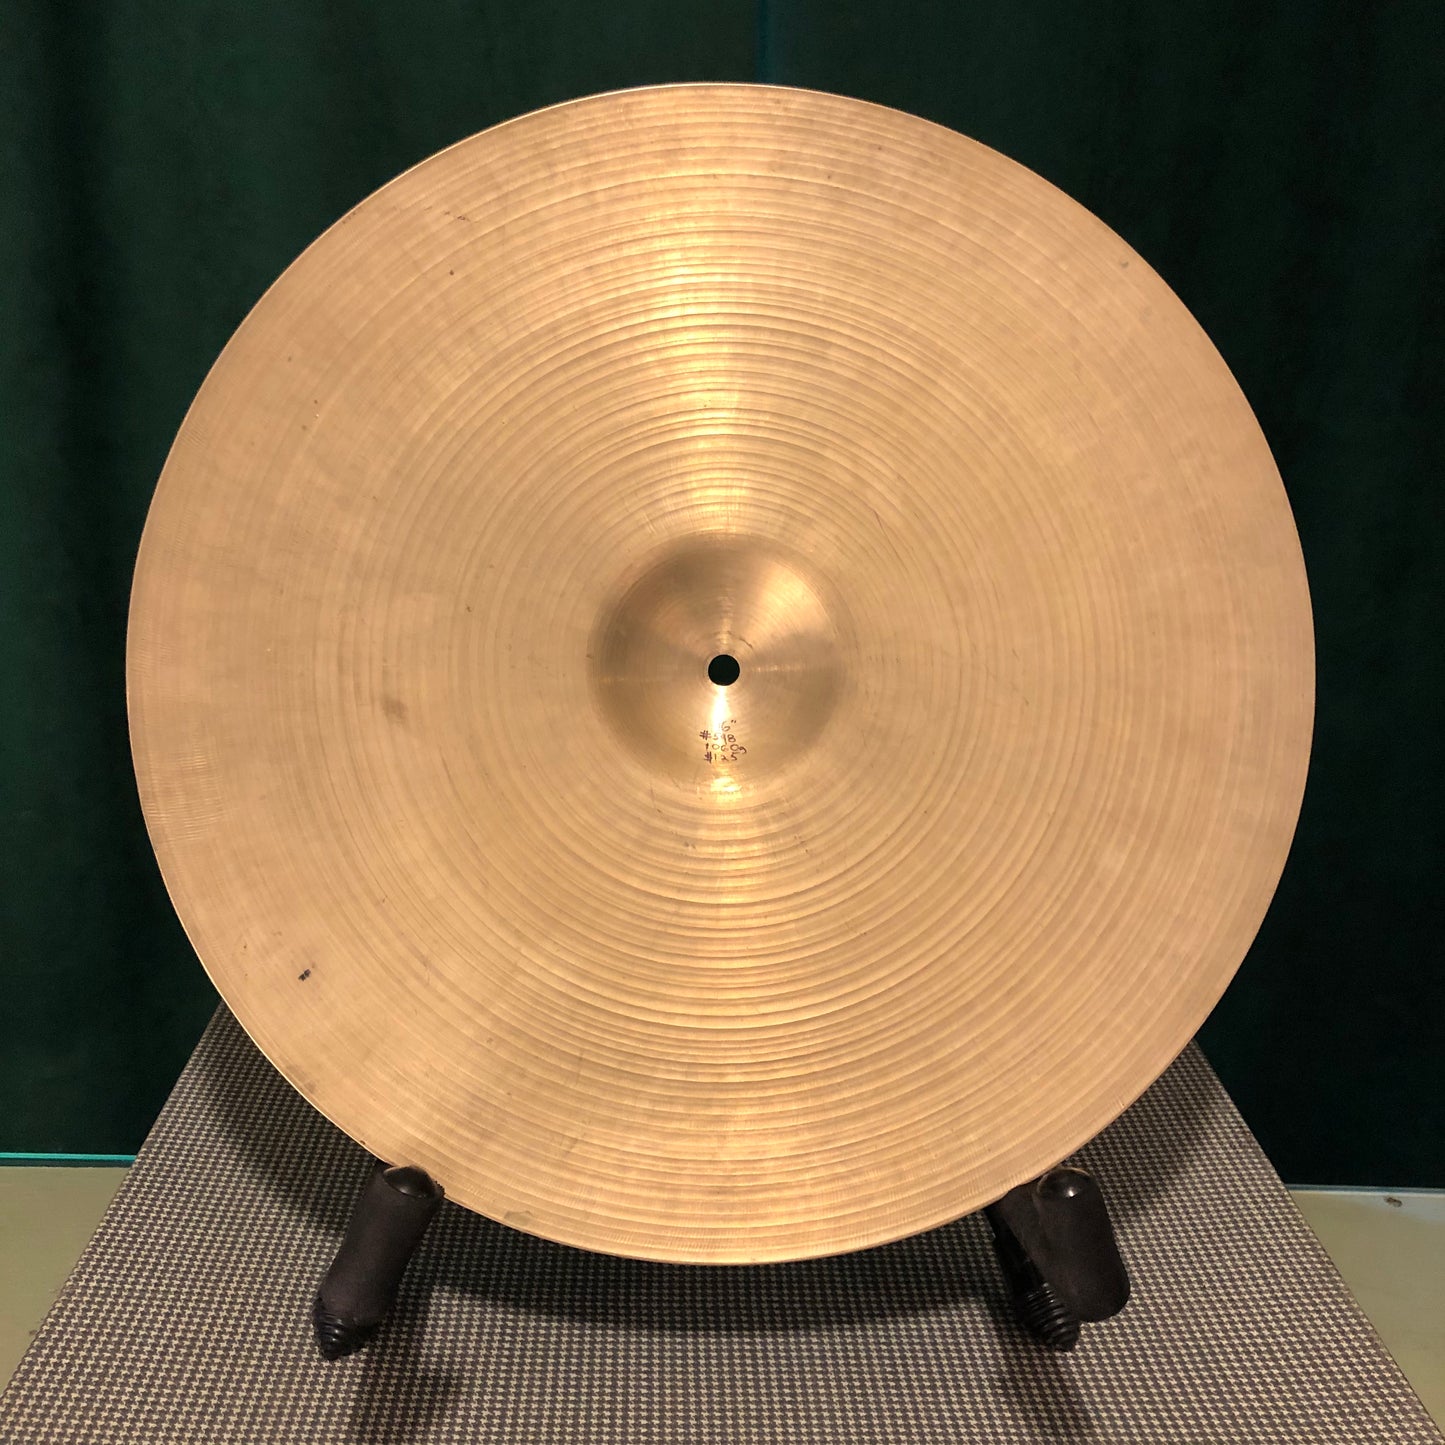 16" Vintage UFIP Crash Cymbal 1060g #598 *Sound File*